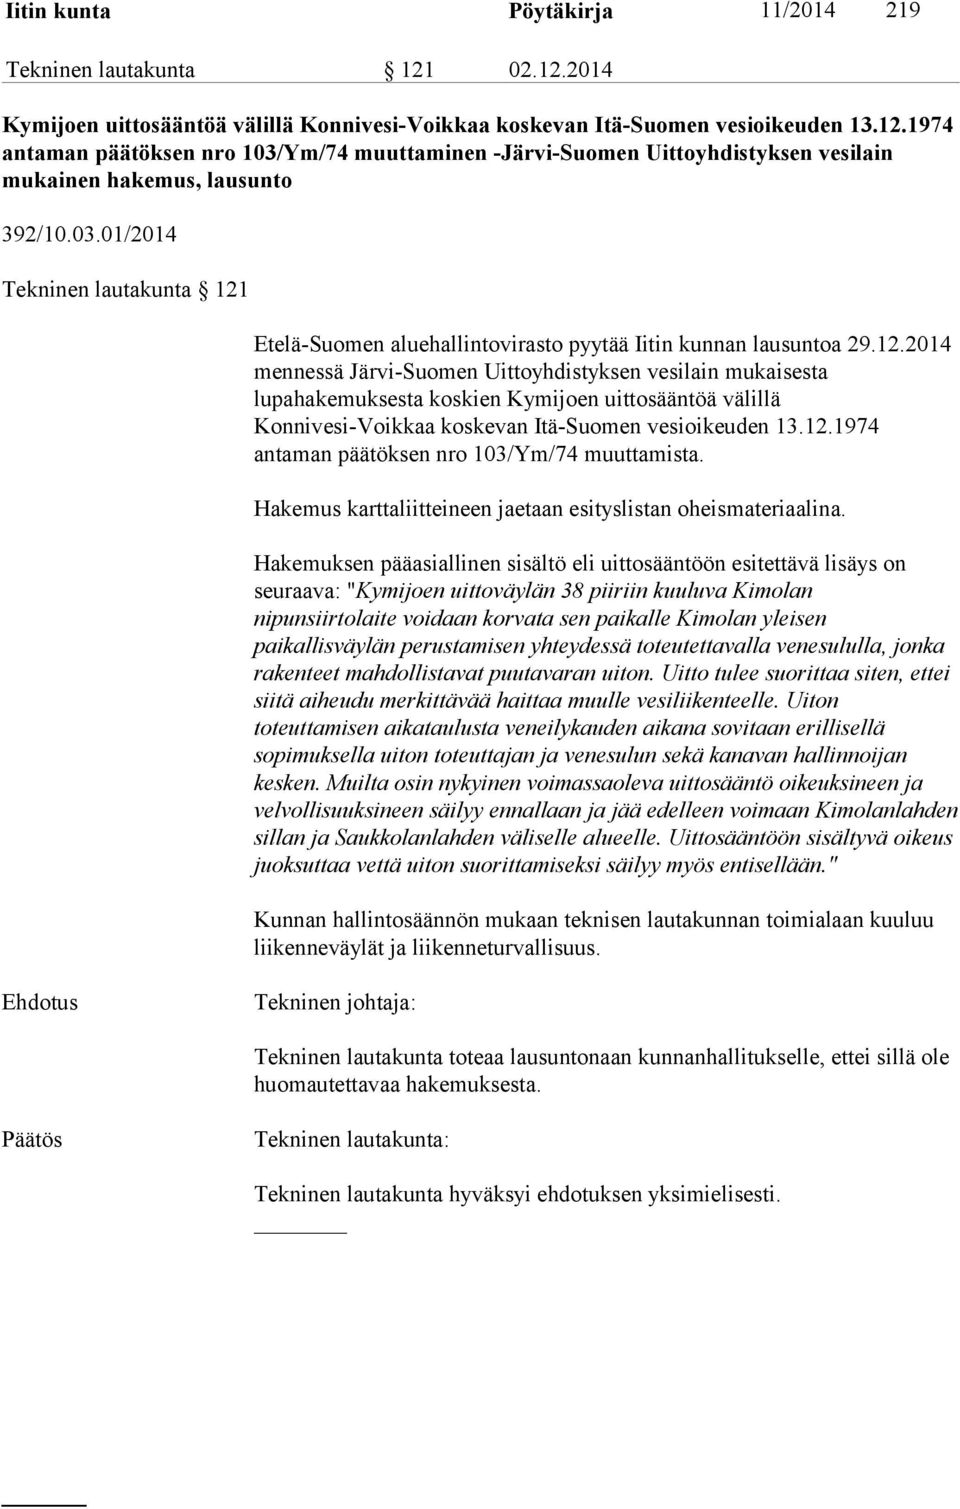 Etelä-Suomen aluehallintovirasto pyytää Iitin kunnan lausuntoa 29.12.